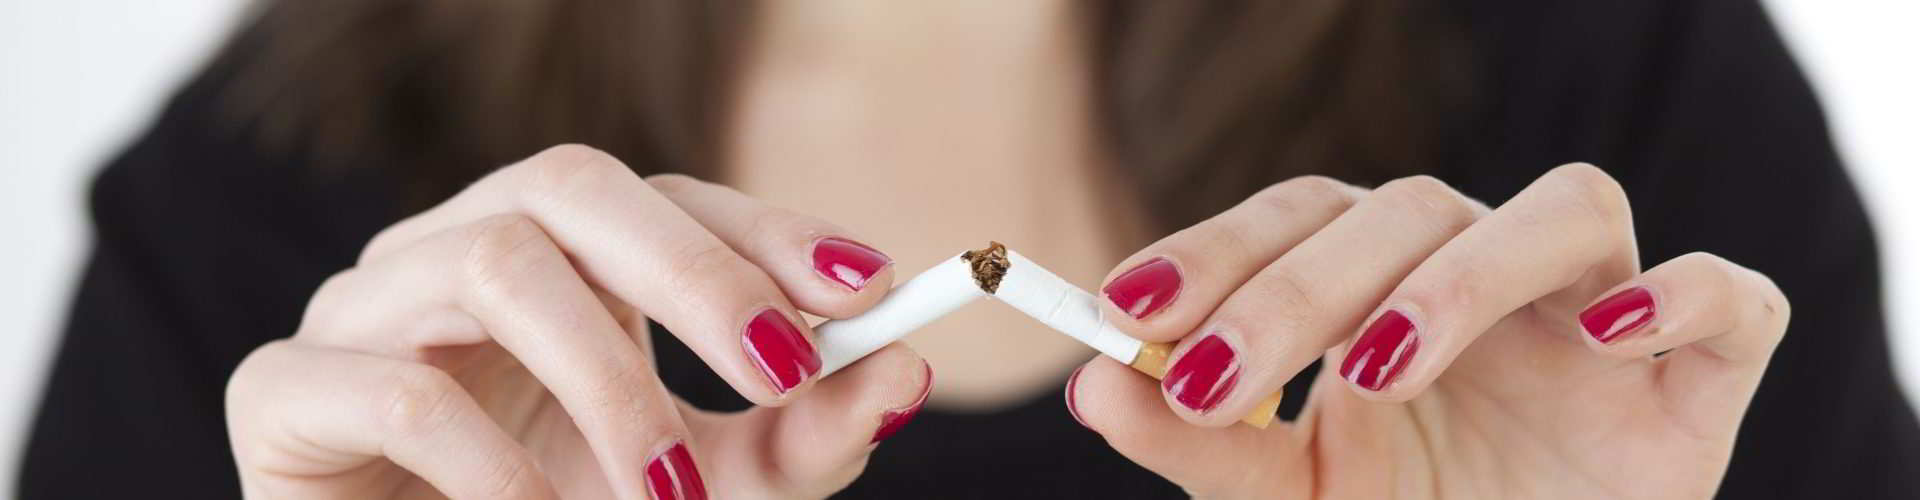 cigarro e infertilidade